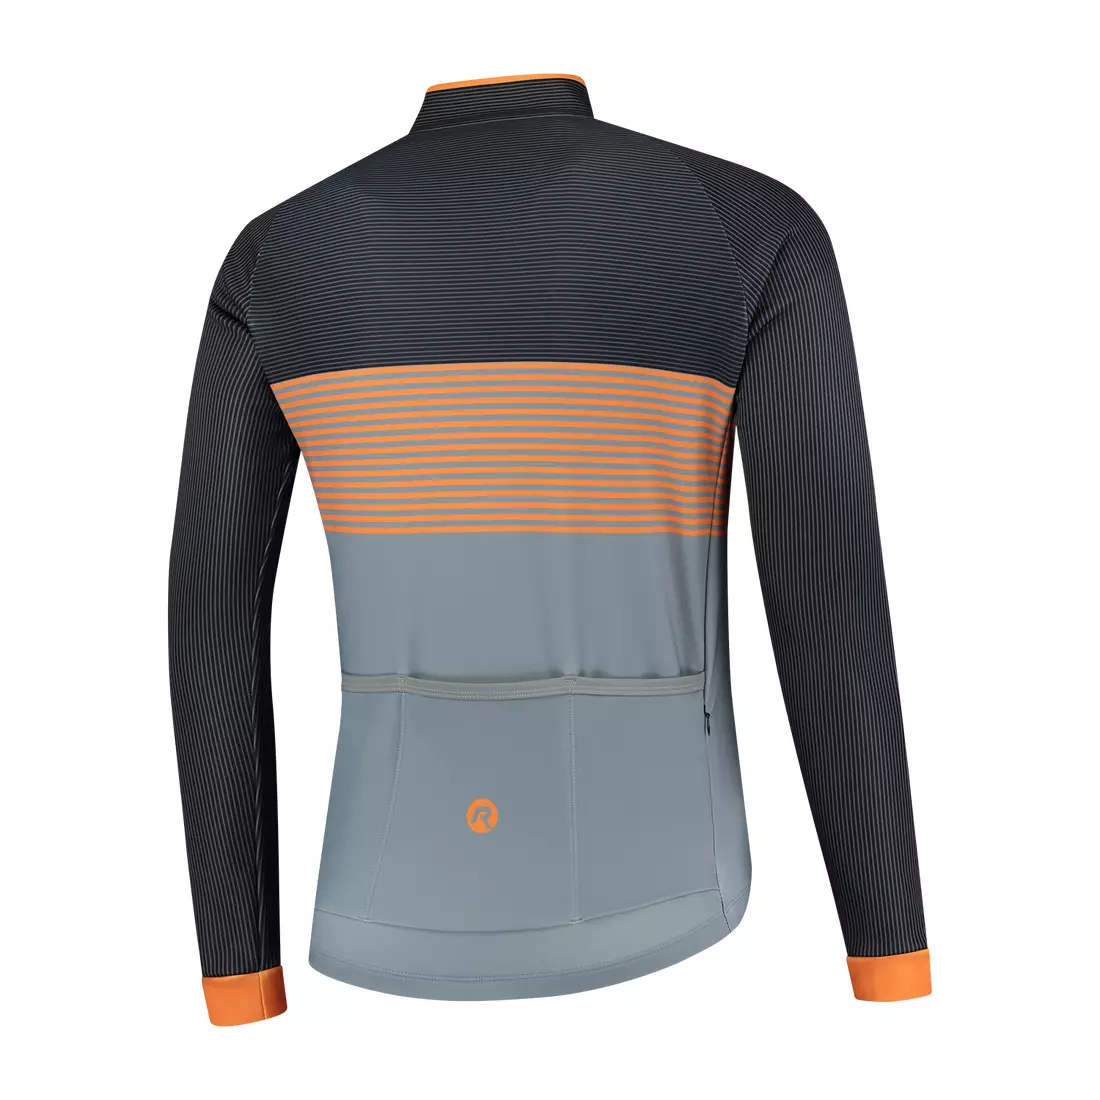 ROGELLI winter cycling jacket BOOST grey/orange ROG351038